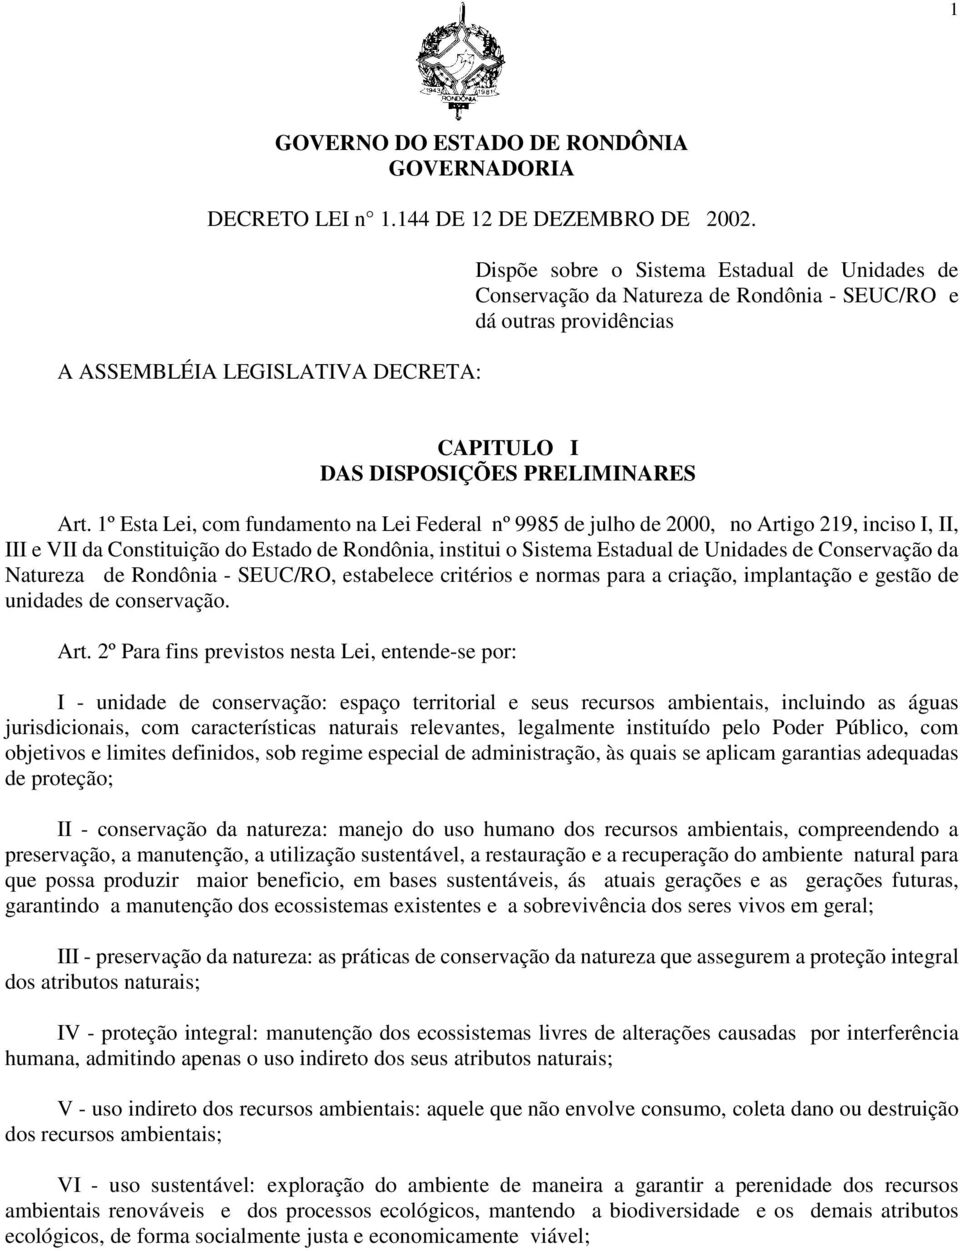 1º Esta Lei, com fundamento na Lei Federal nº 9985 de julho de 2000, no Artigo 219, inciso I, II, III e VII da Constituição do Estado de Rondônia, institui o Sistema Estadual de Unidades de